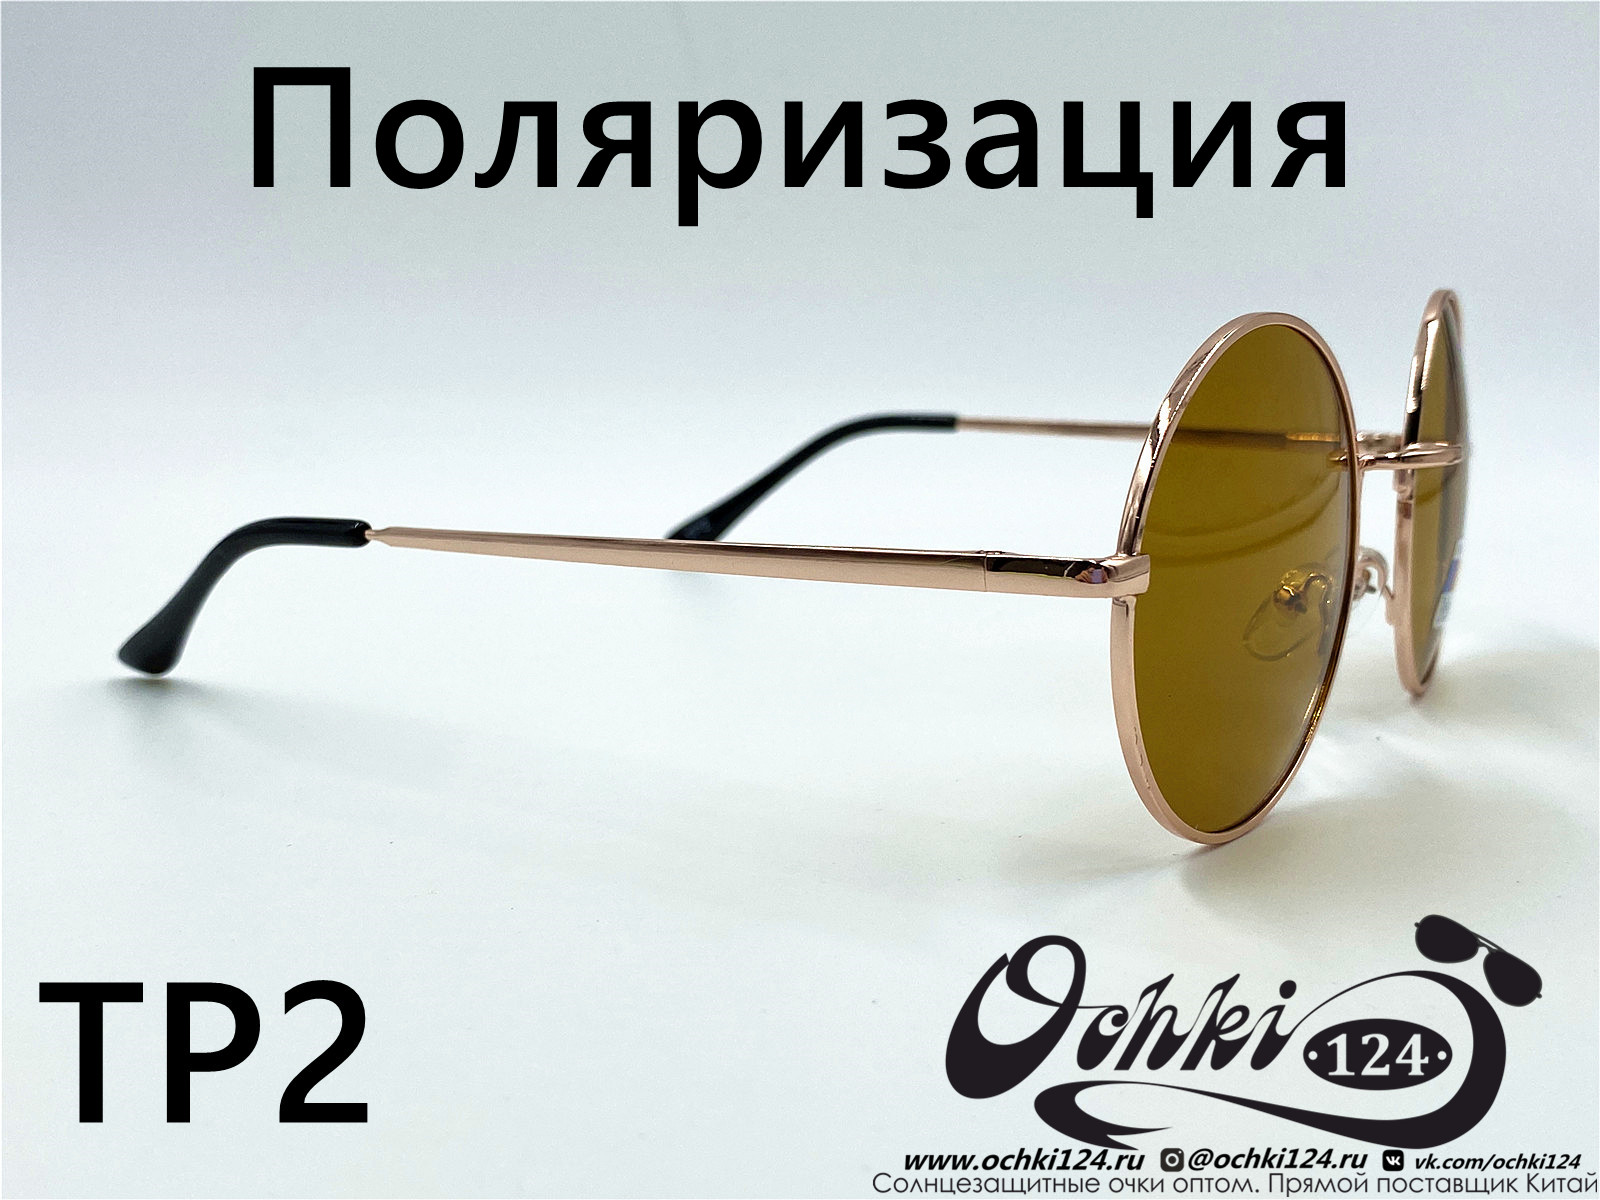  Солнцезащитные очки картинка 2022 Мужские Поляризованные Круглые KaiFeng TP2-4 